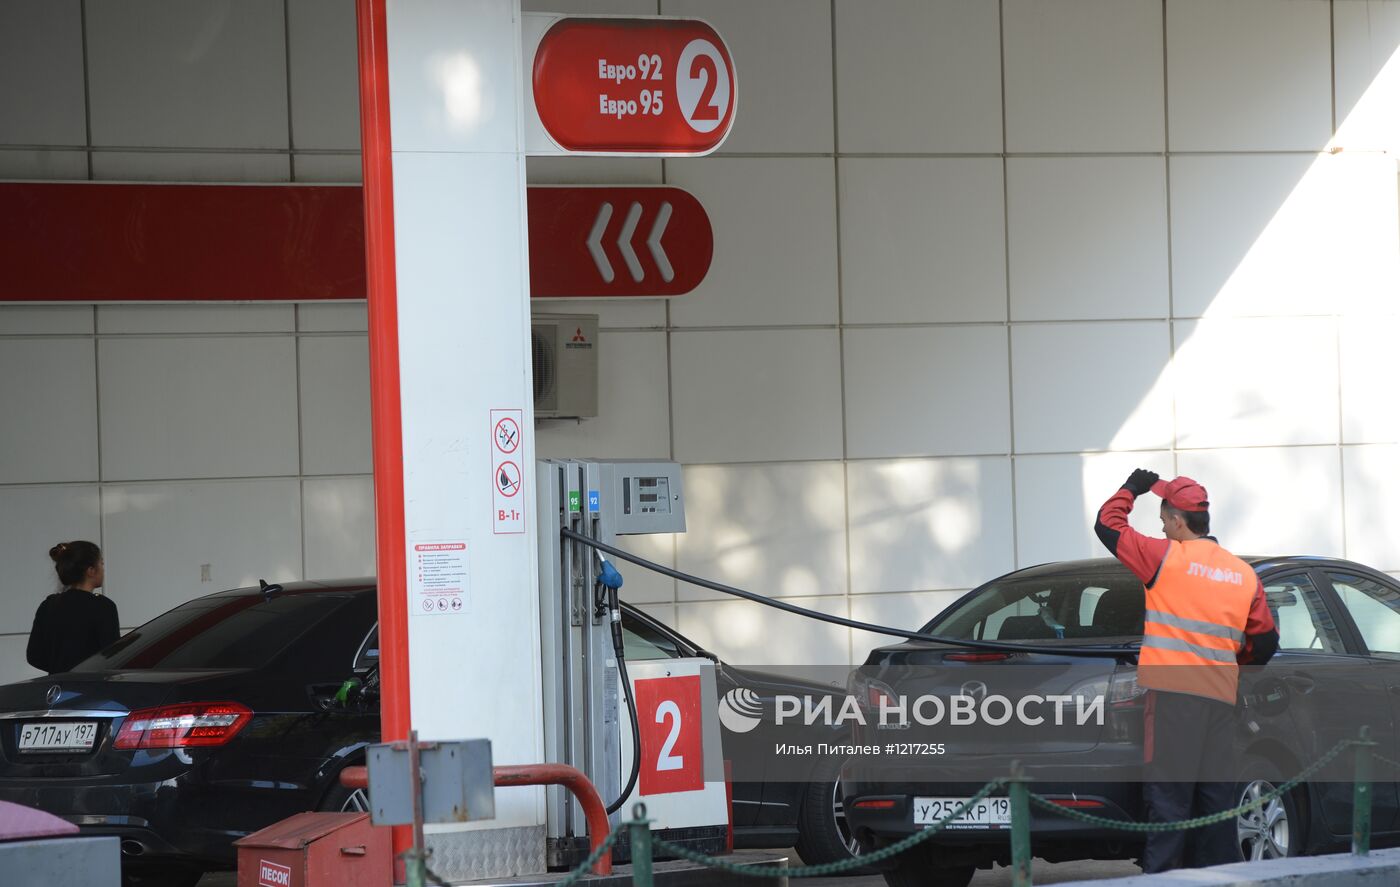 Повышение цен на топливо на АЗС компании "Лукойл"